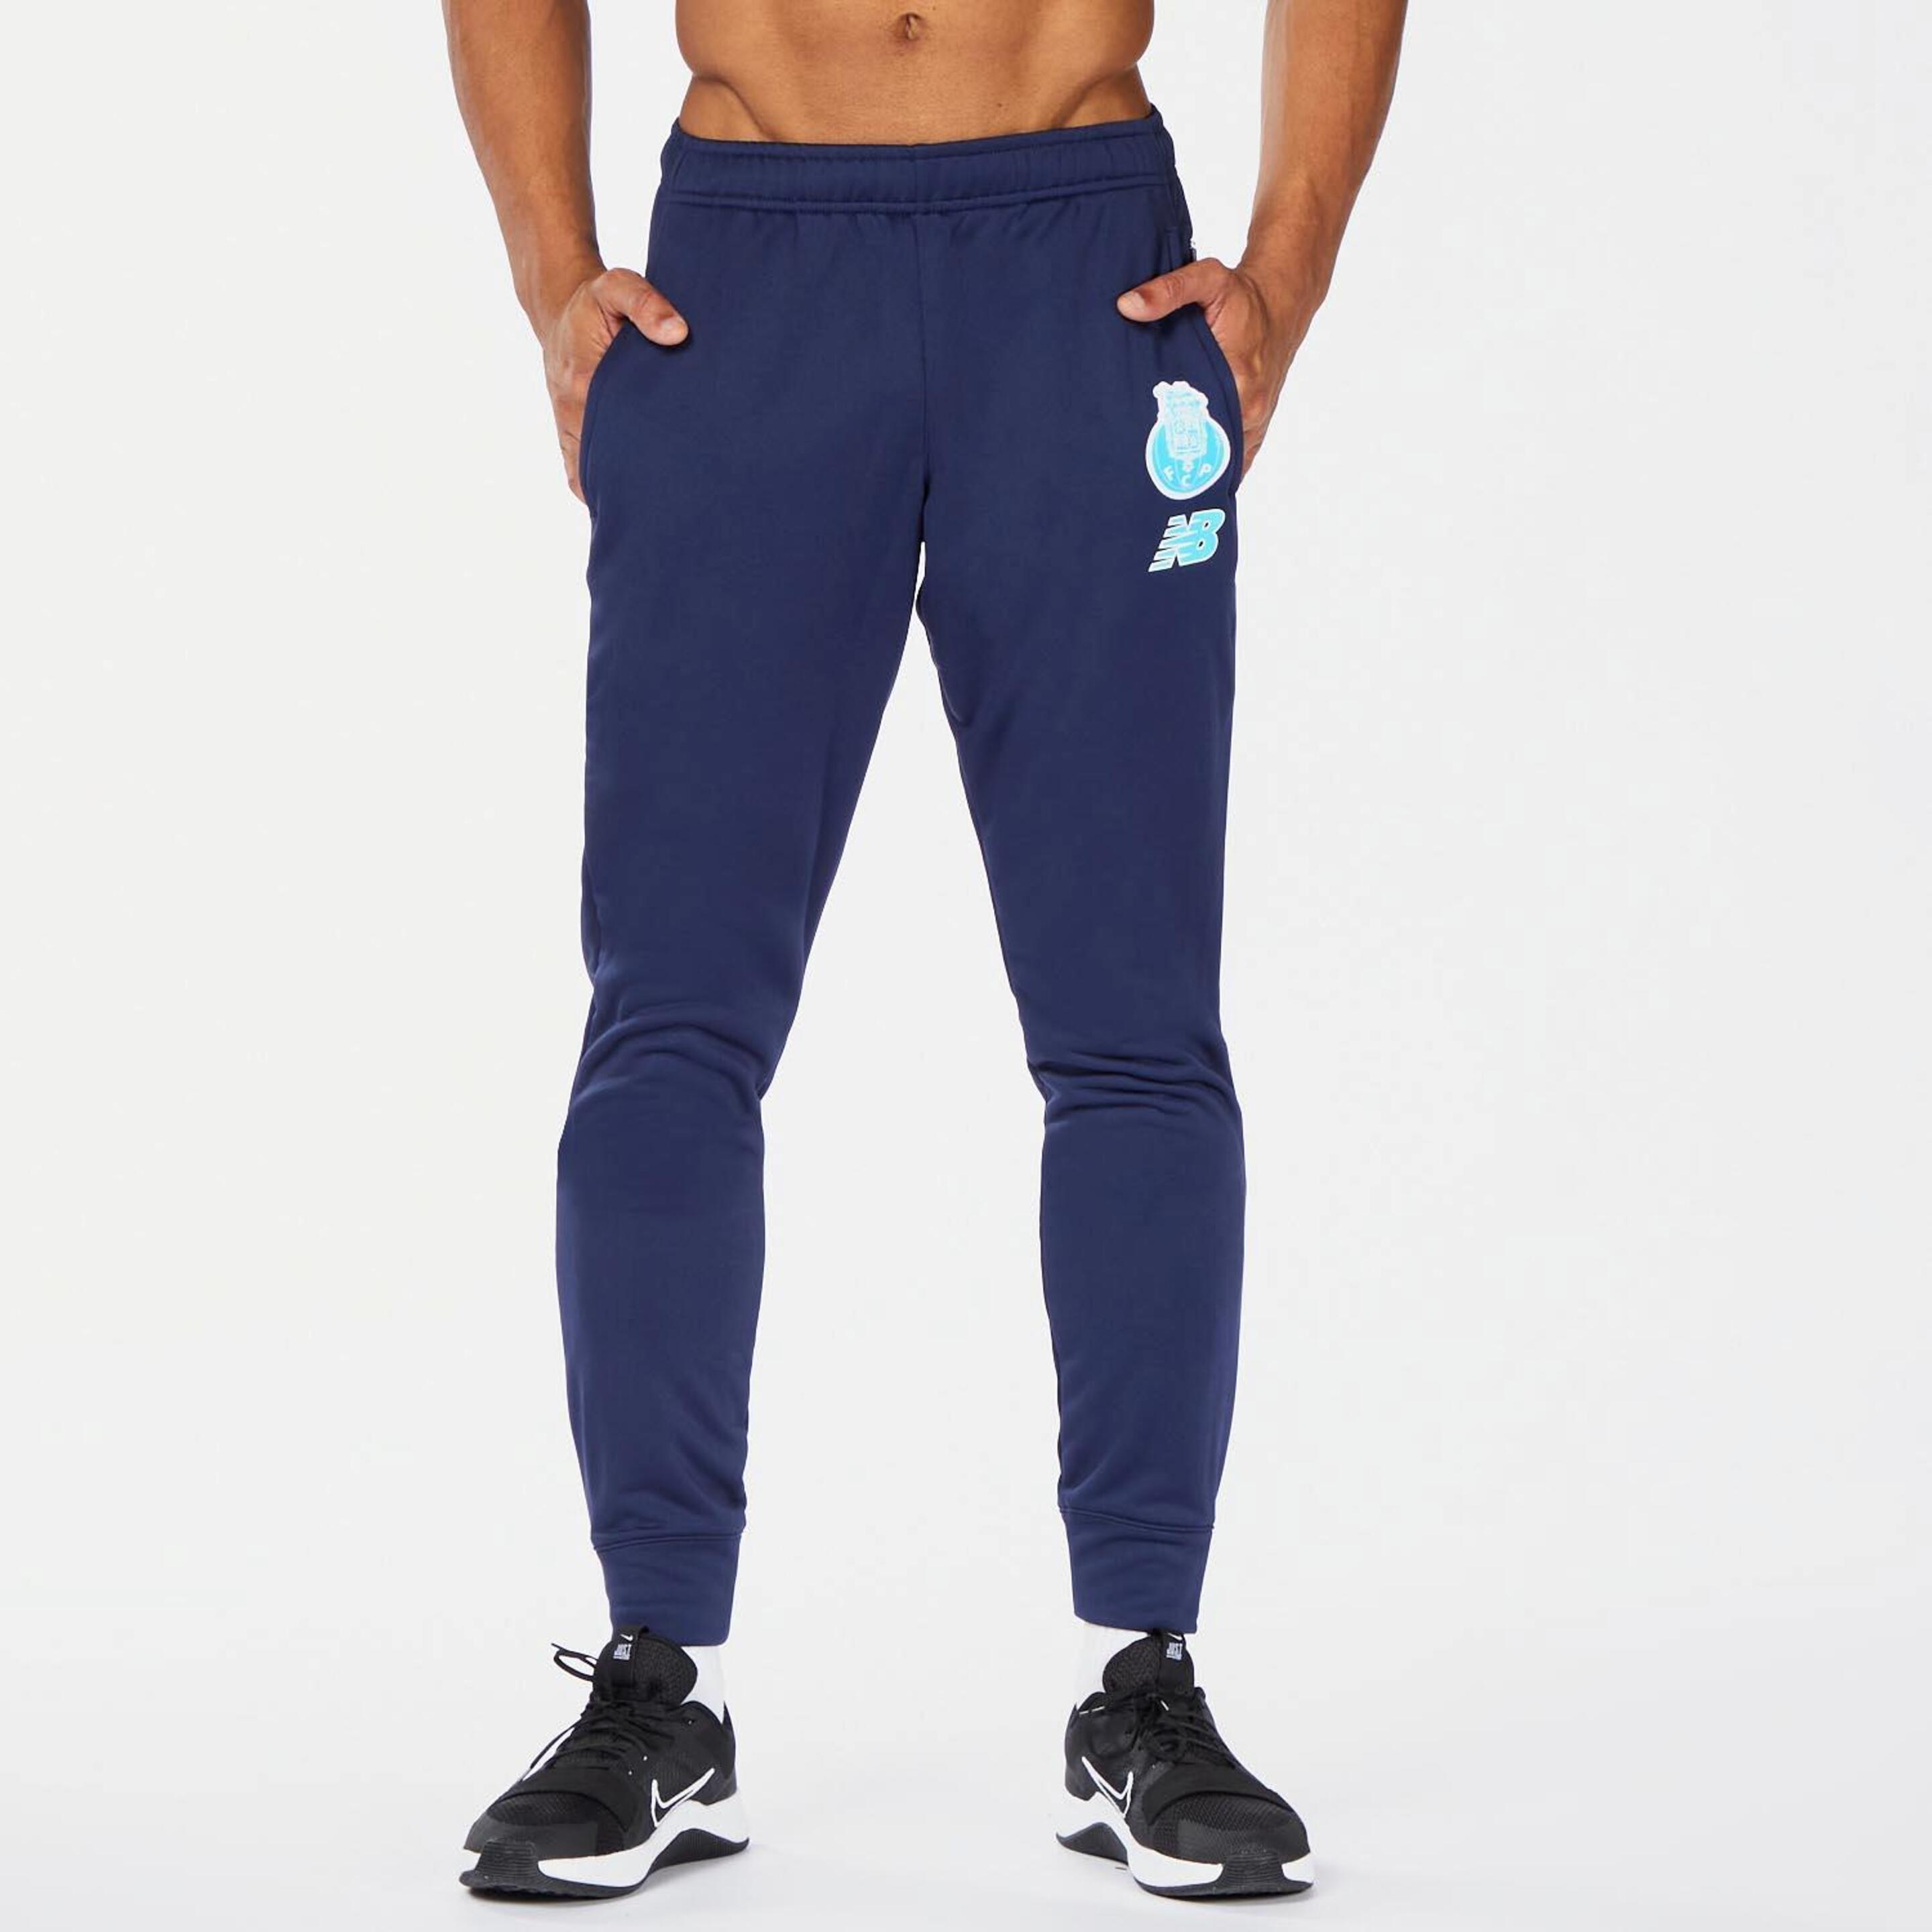 Nb Fcp - azul - Pantalón Fútbol Hombre